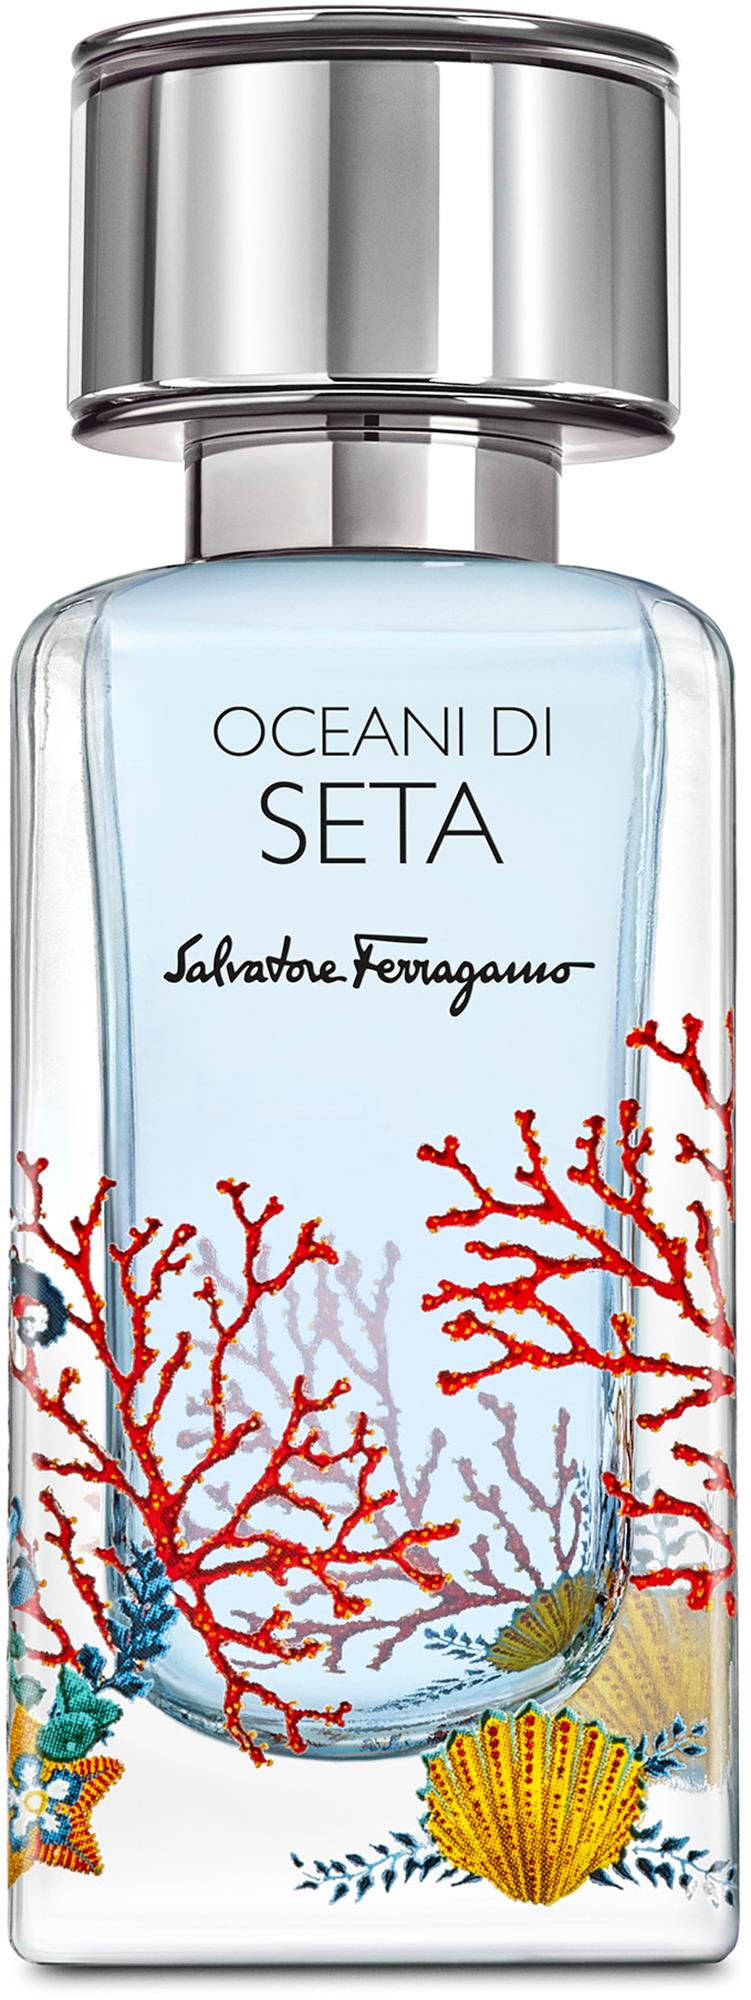 Parfum di 50 Ferragamo Salvatore Eau ml Oceani Seta de